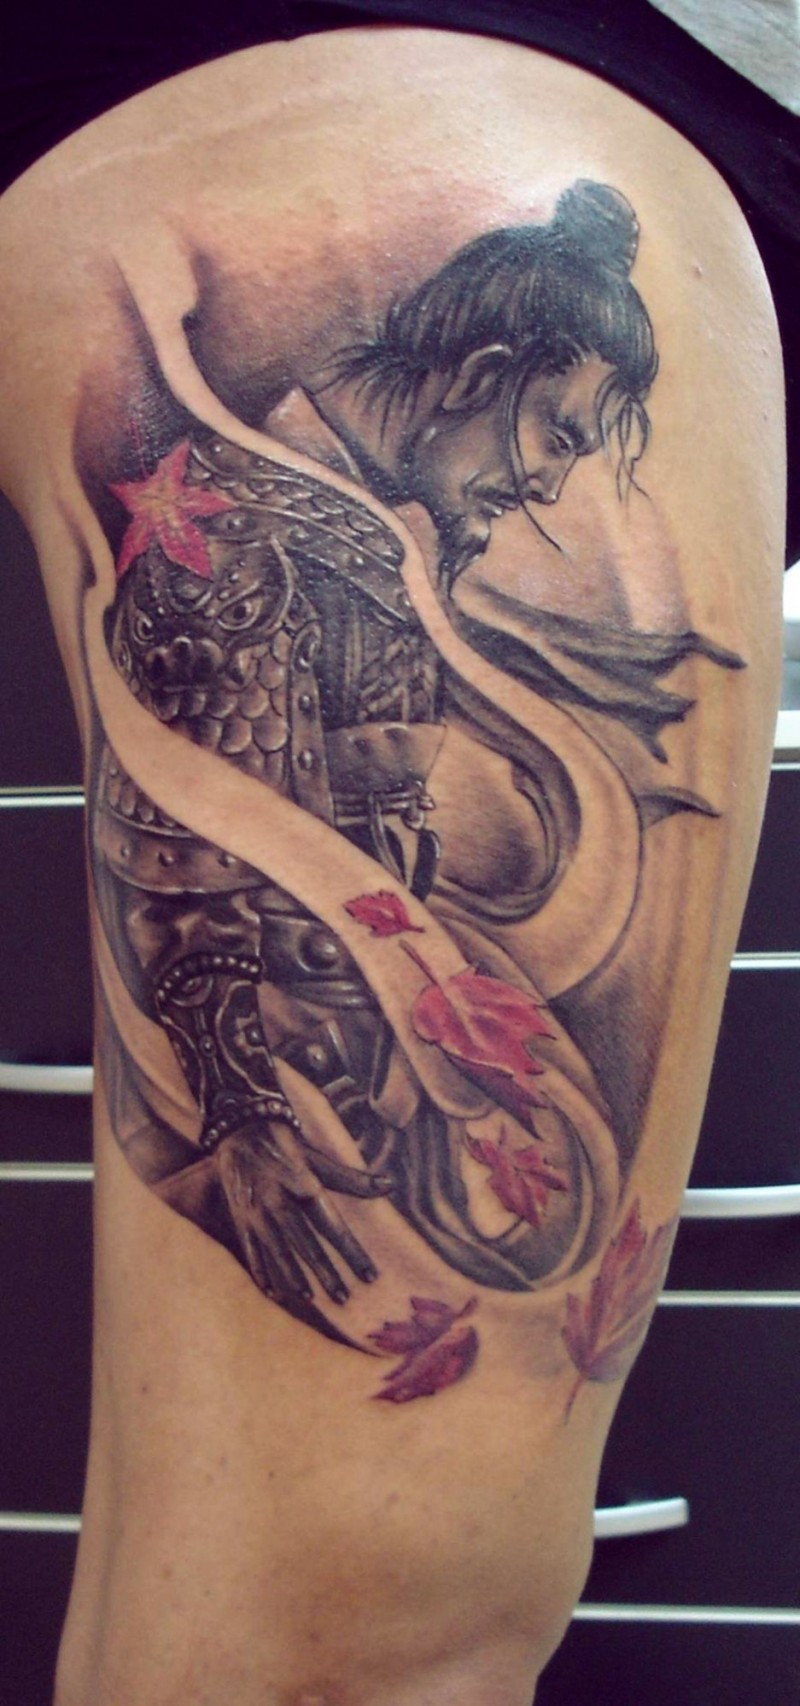 Tatuaje en el brazo,
samurái triste en el viente con hojas caídas